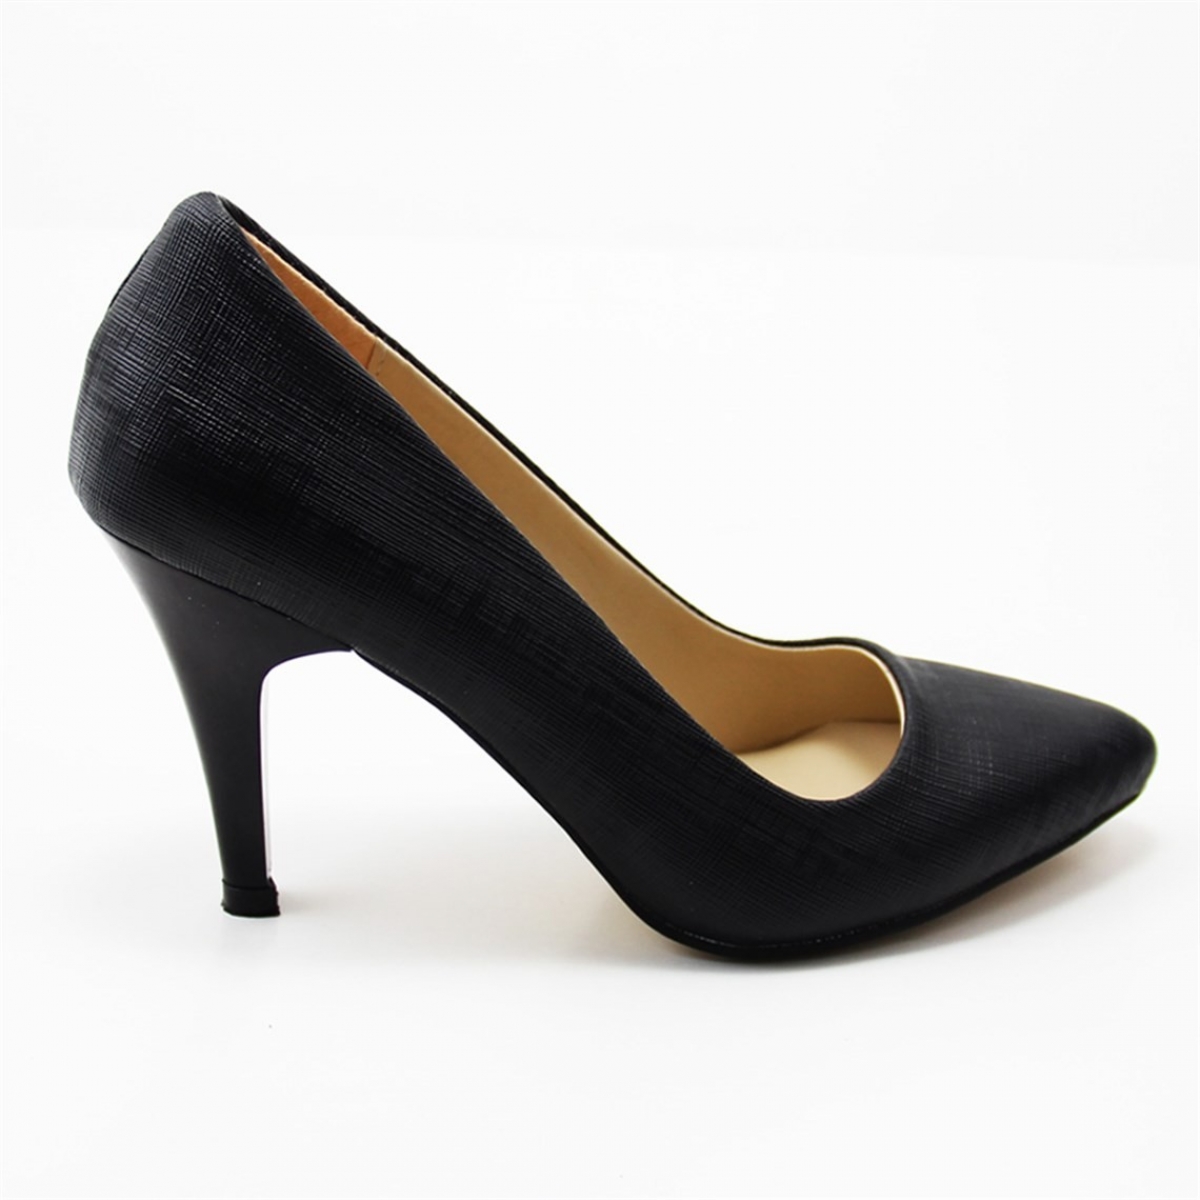 Flo Günlük Topuklu Siyah-Petekli Kadın Ayakkabı N-2500. 1